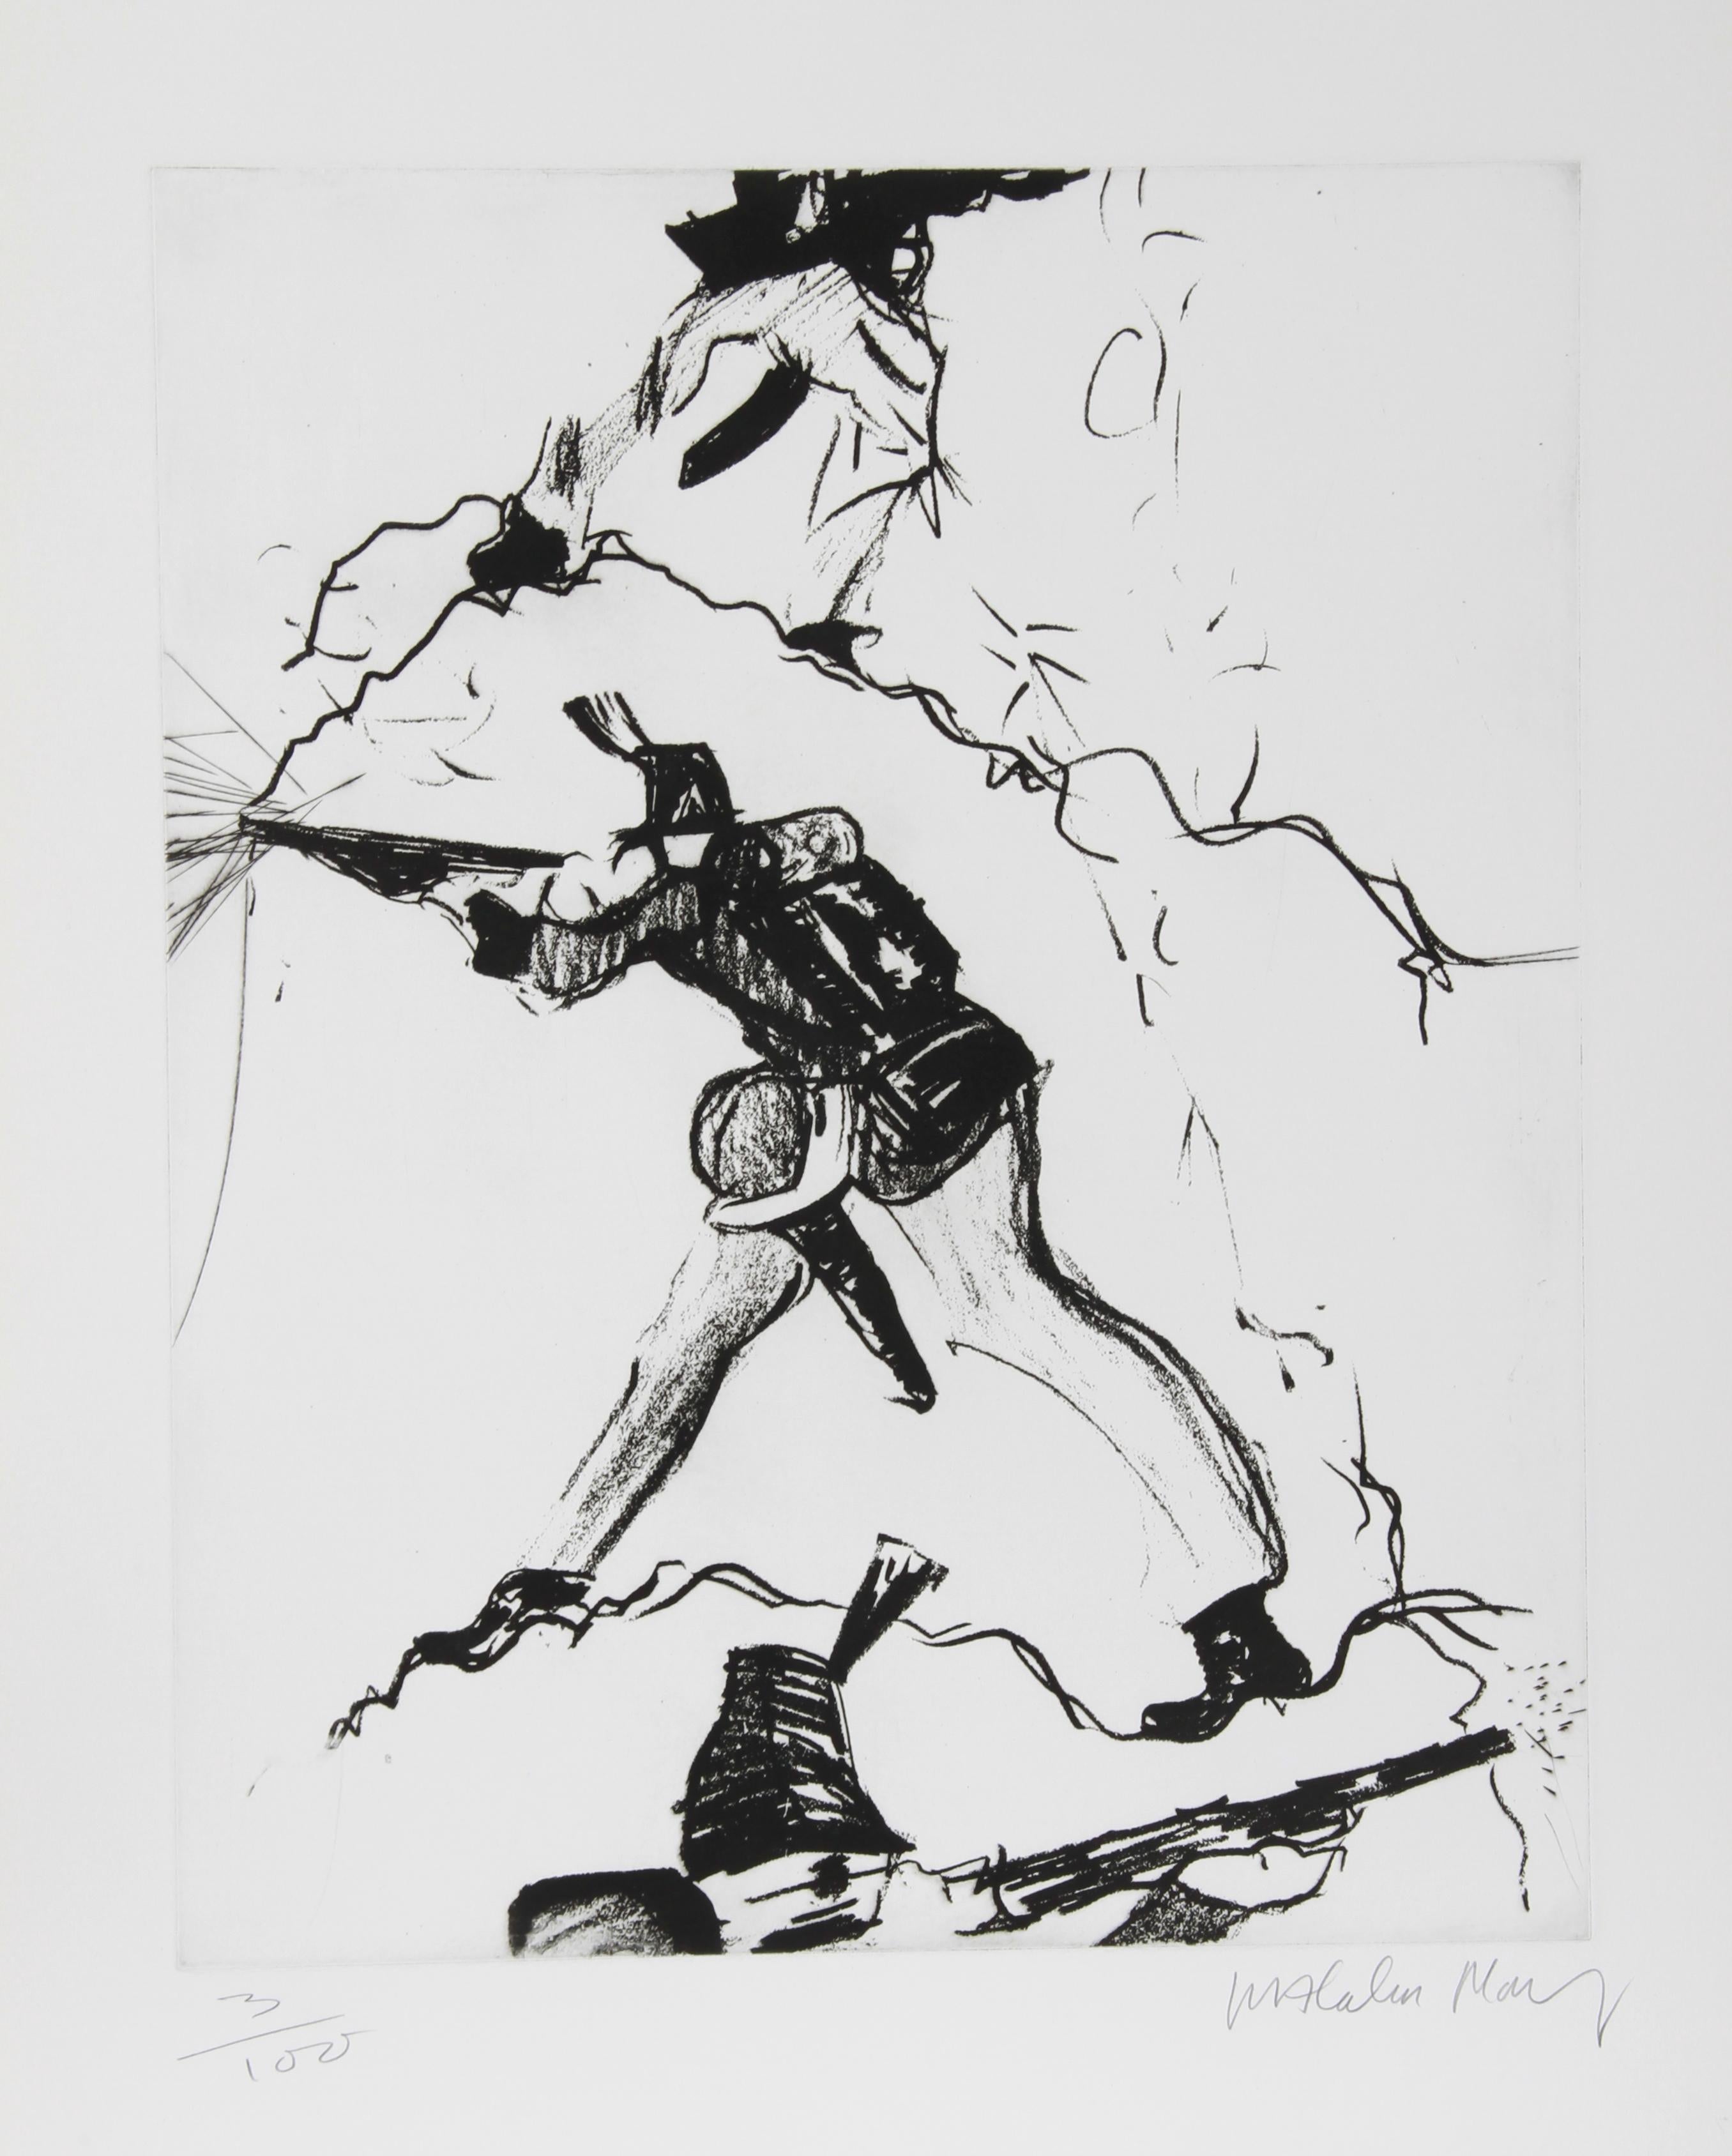 Artiste : Malcolm Morley, britannique (1931 - 2018)
Titre : Soldat
Année : Circa 1980
Médium : Eau-forte, signée et numérotée au crayon
Edition : 100
Taille de l'image : 22 x 18 pouces
Taille : 30 in. x 22.5 in. (76,2 cm x 57,15 cm)